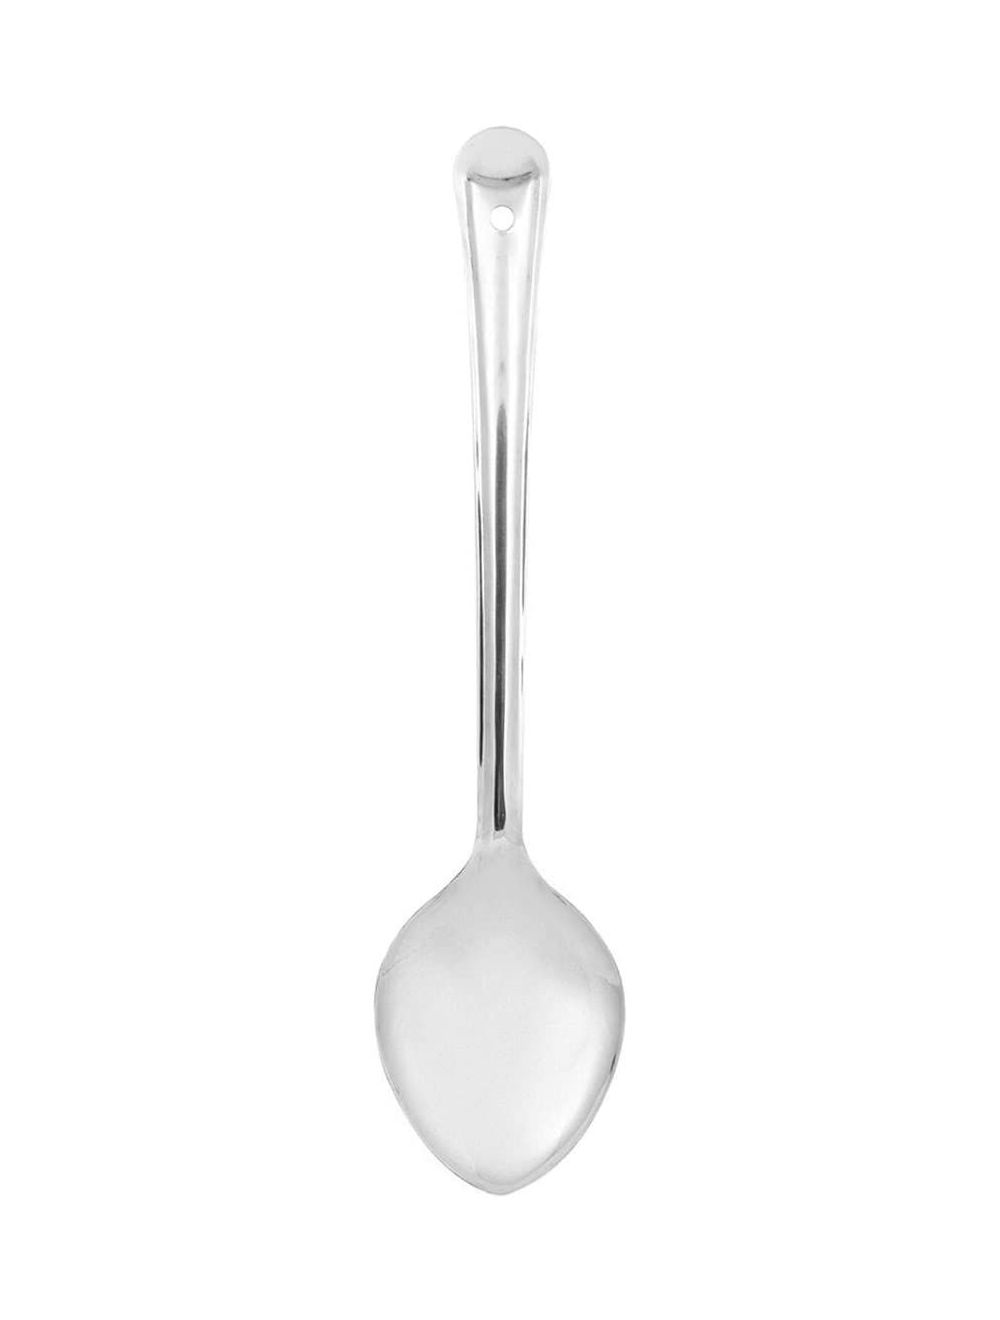 Raj 6.5 cm Basting Spoon-BS0004,Silver